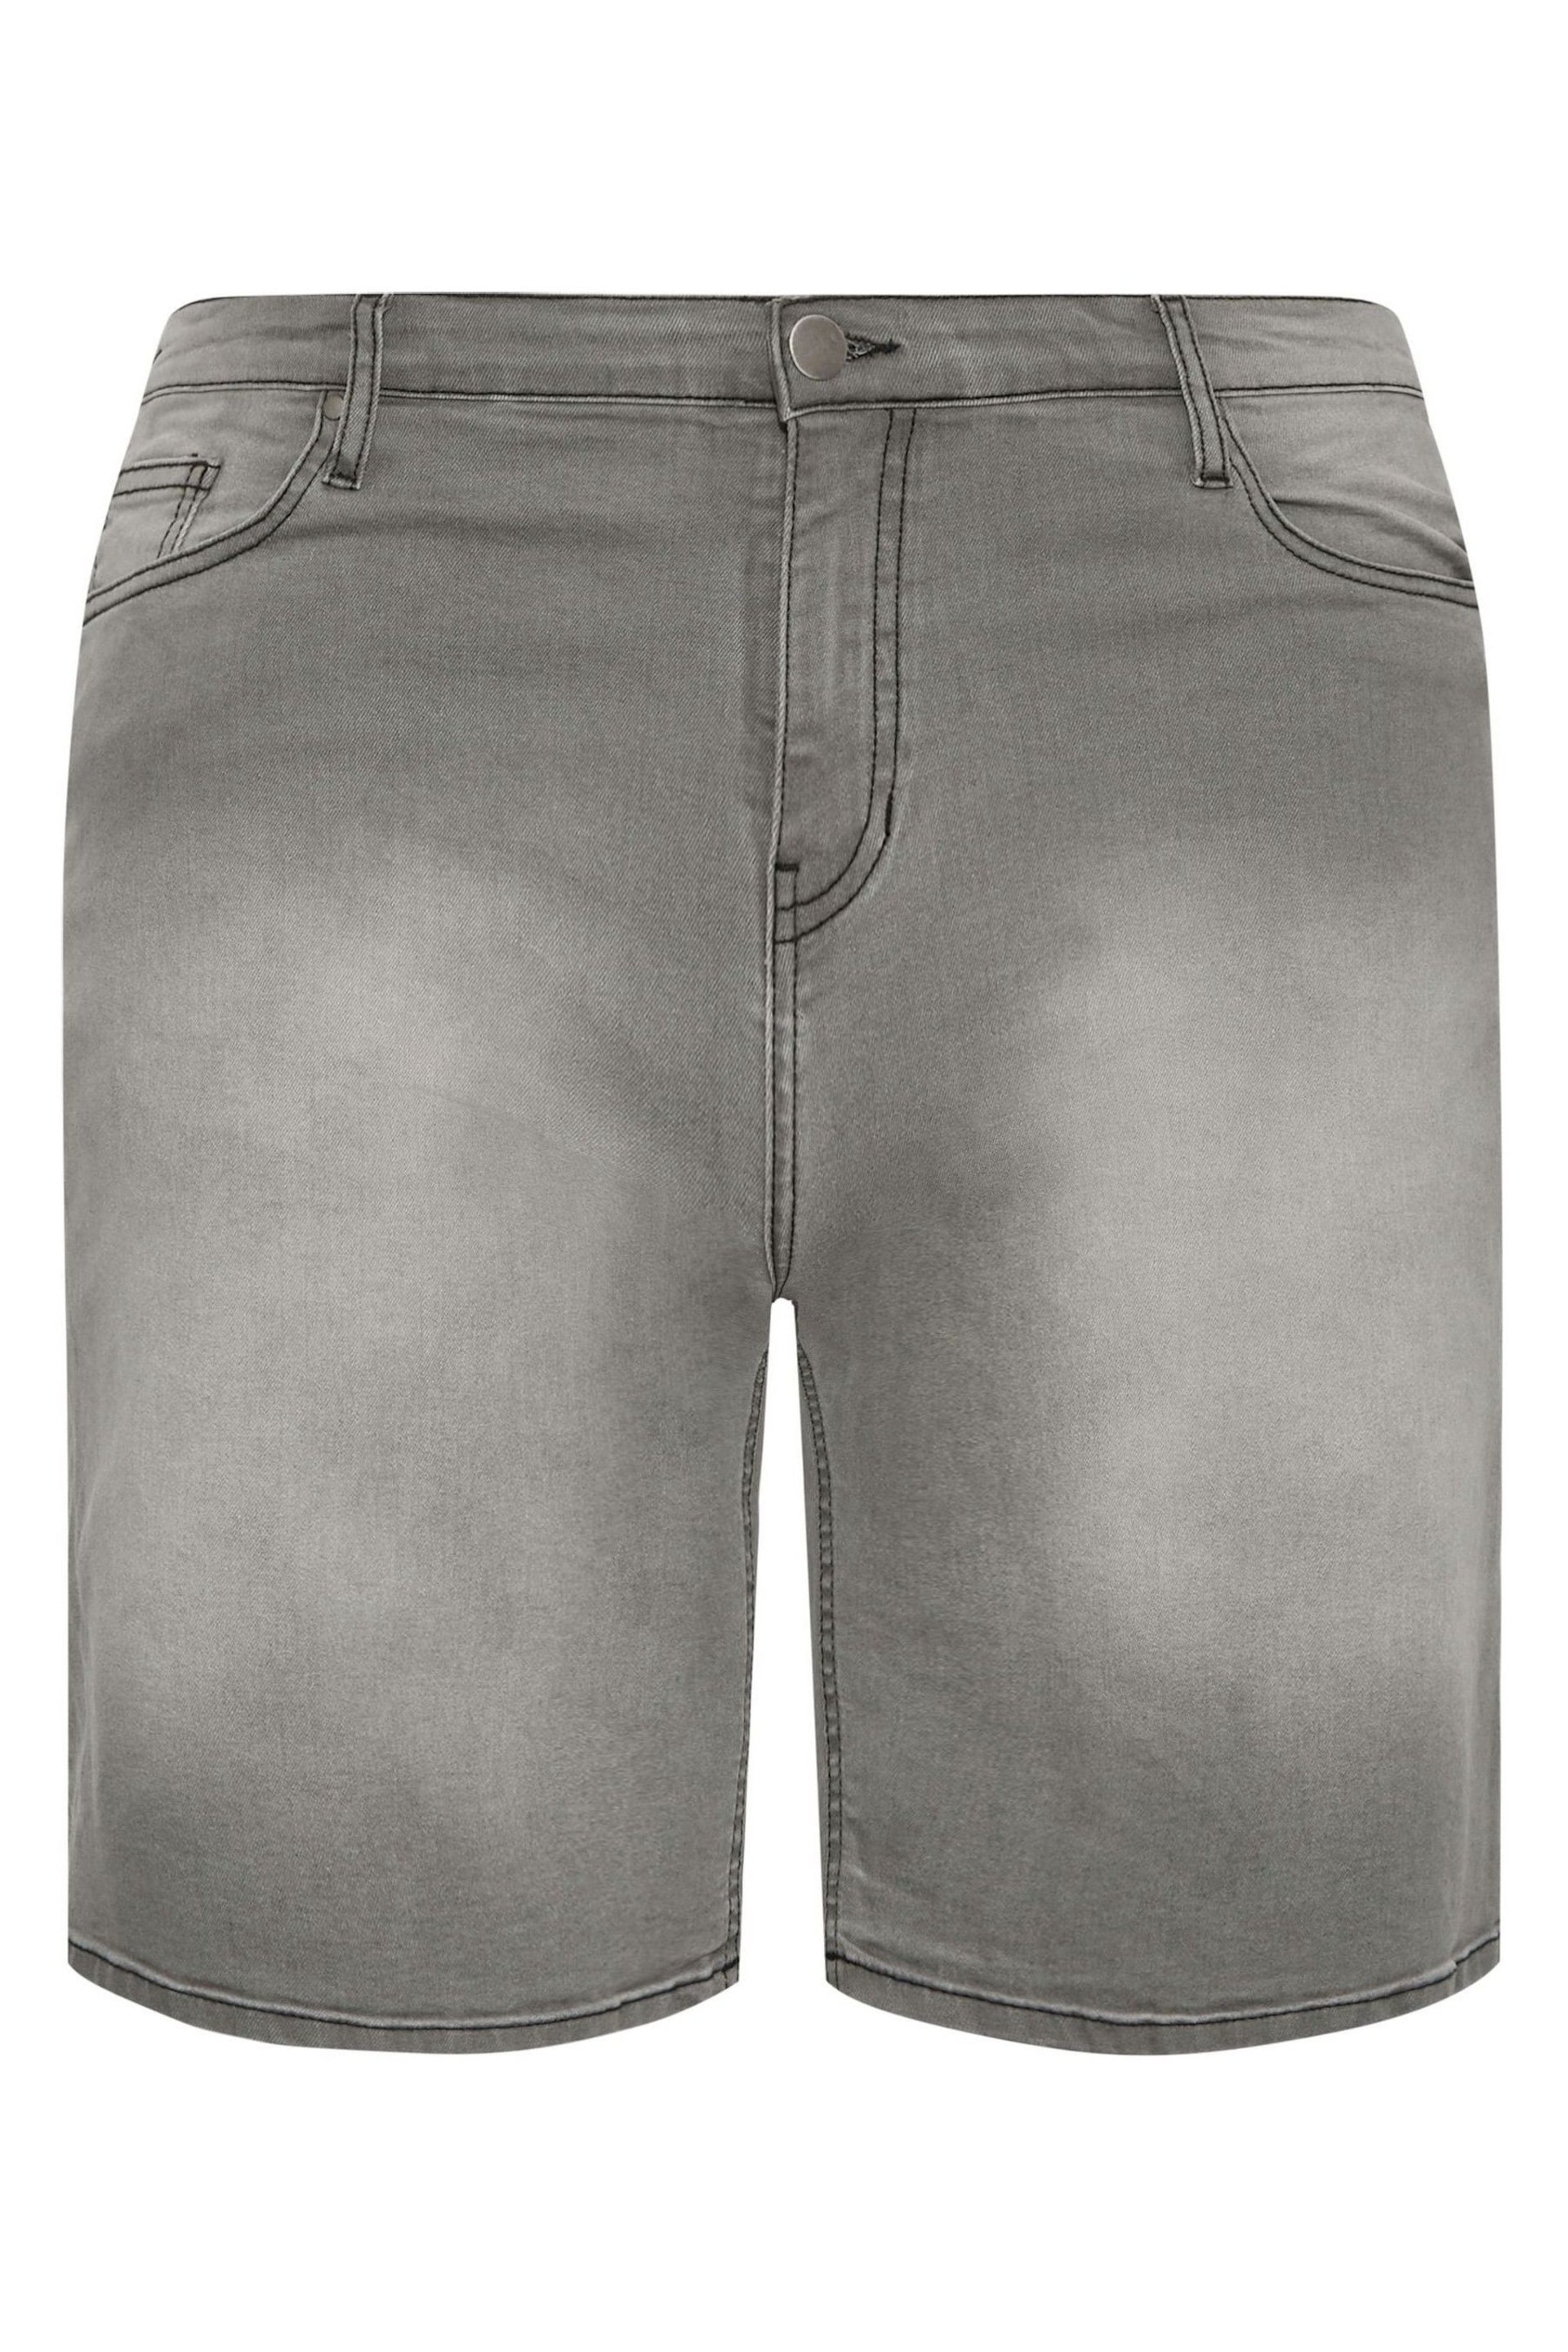 BadRhino Big & Tall Grey Denim Shorts - Image 3 of 4